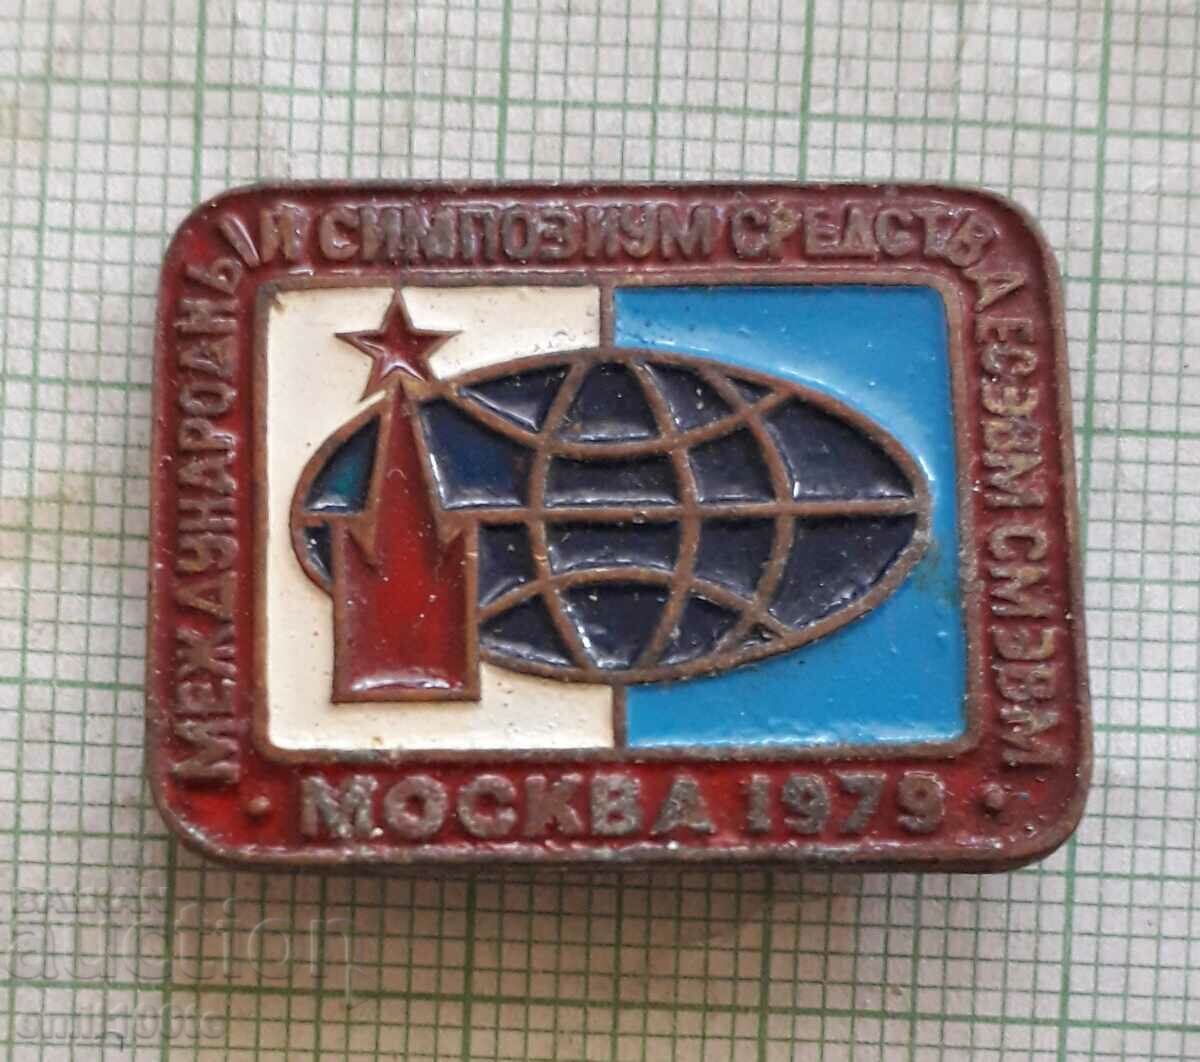 Badge - Moscow 1979 Symposium means EU EVP SM EVM